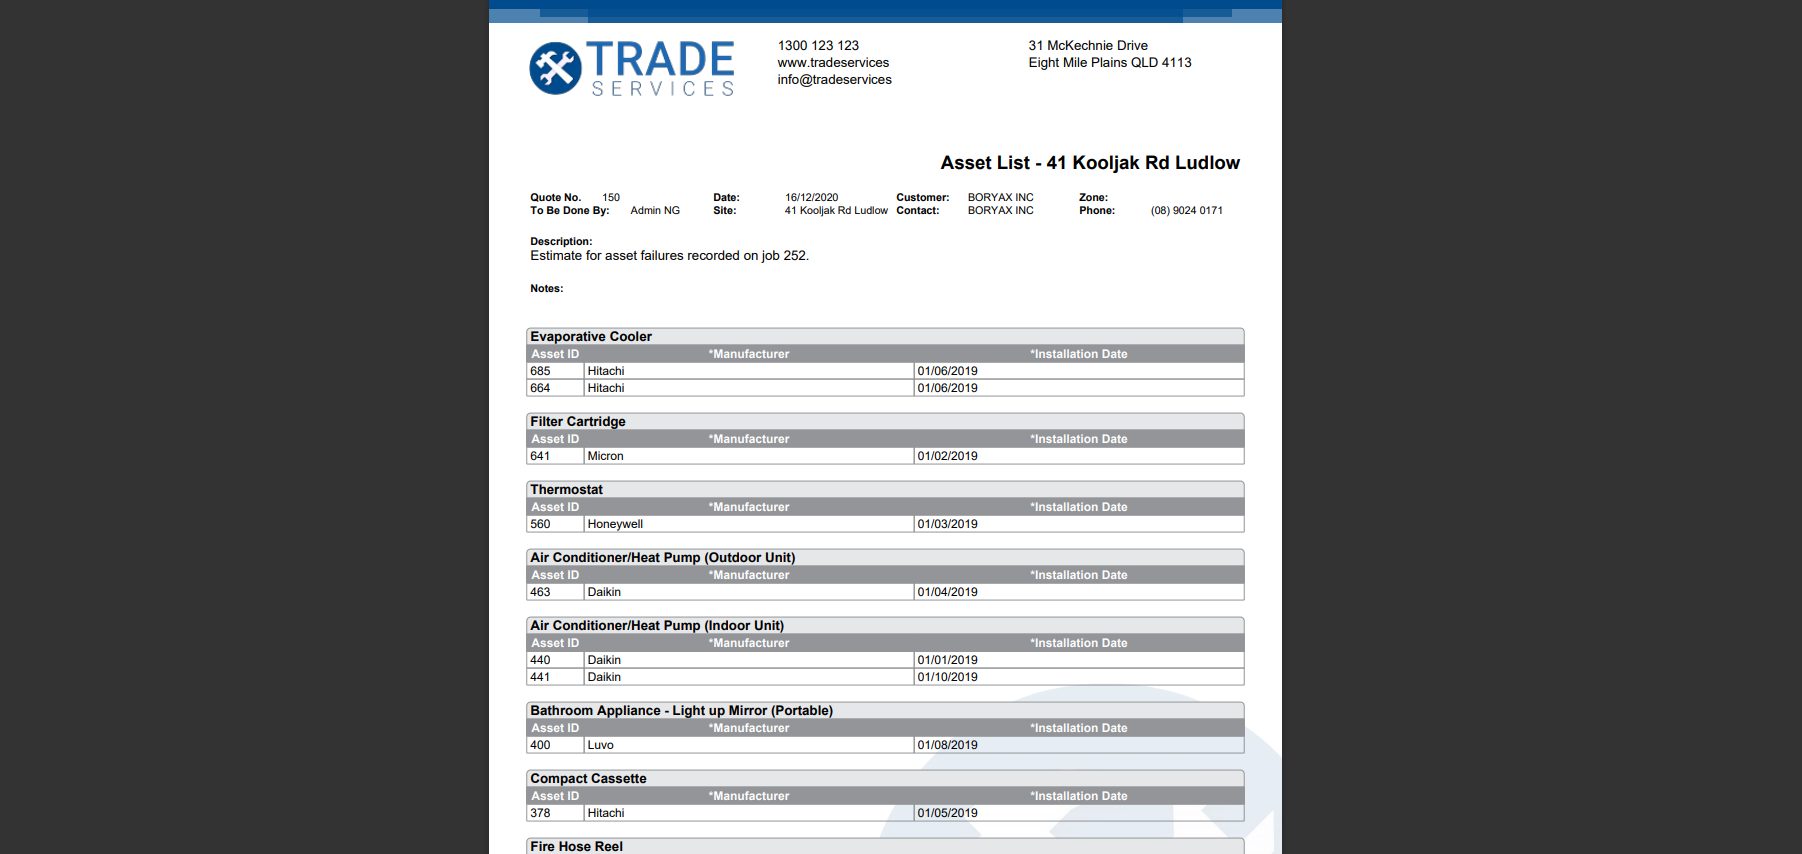 A screenshot of the Asset List - Site form.